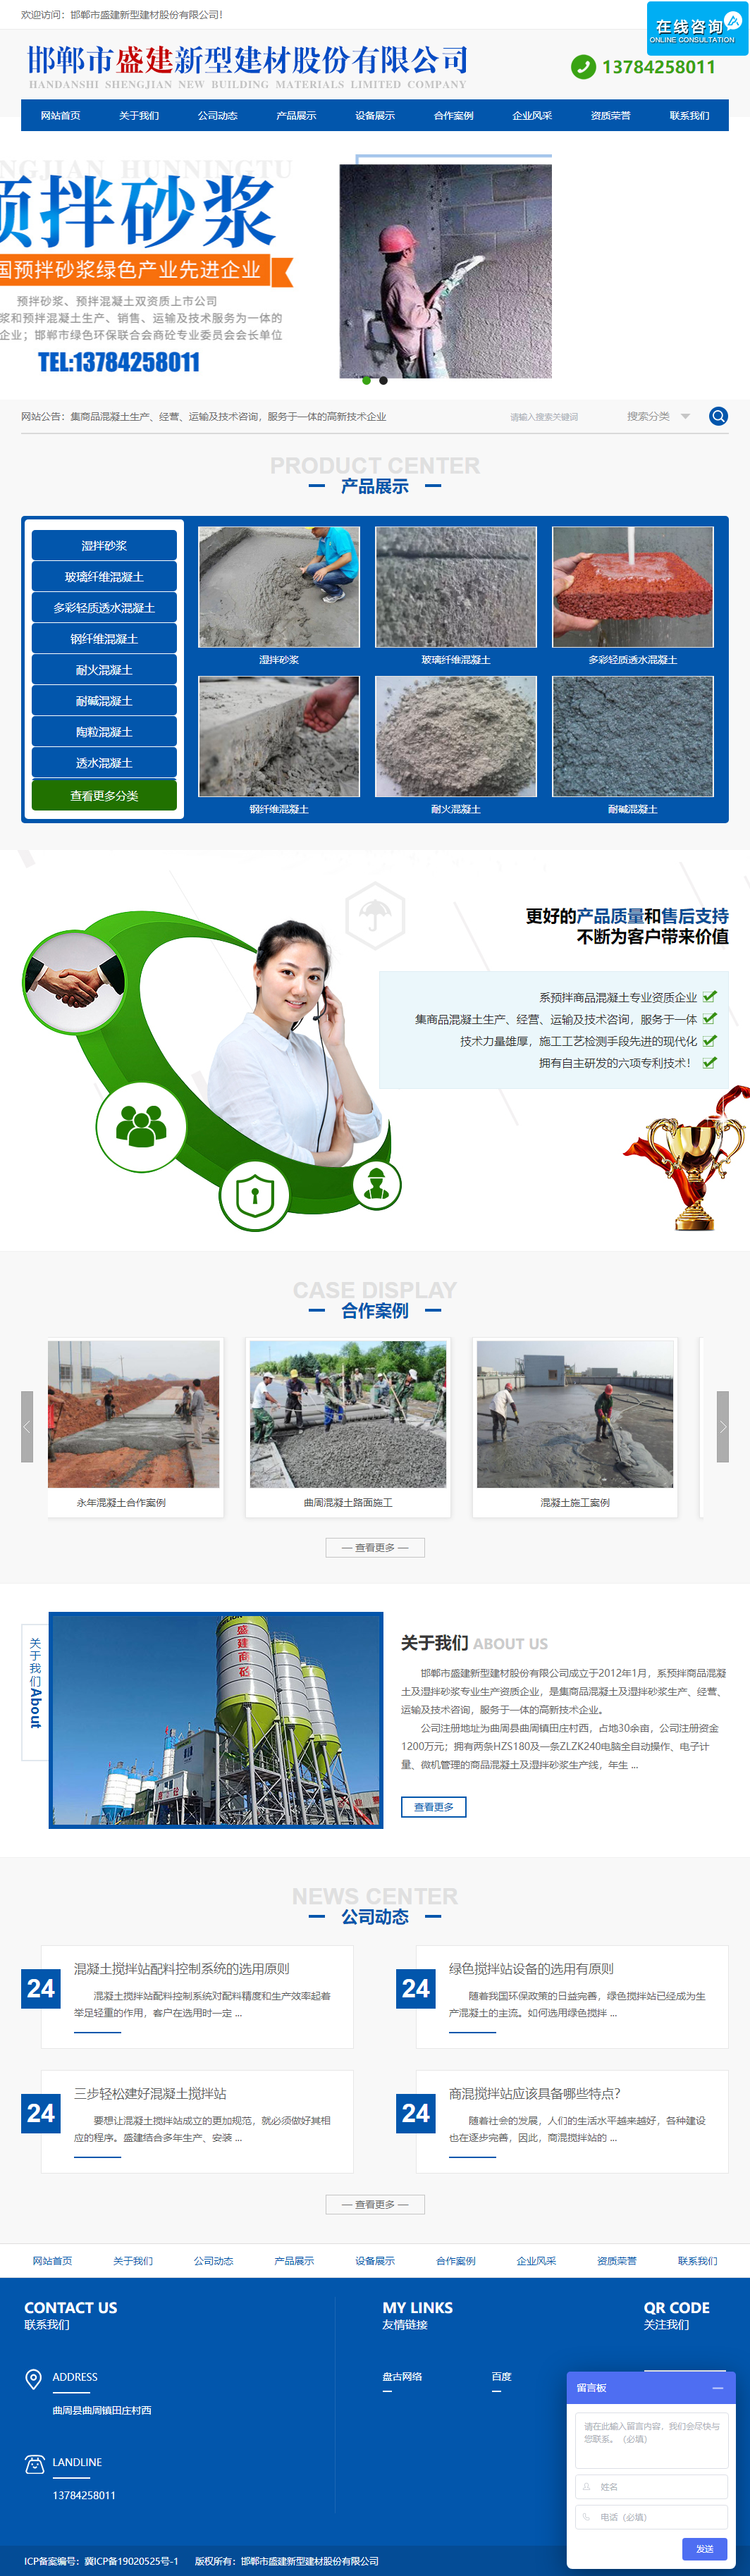 邯郸市盛建新型建材股份有限公司网站案例